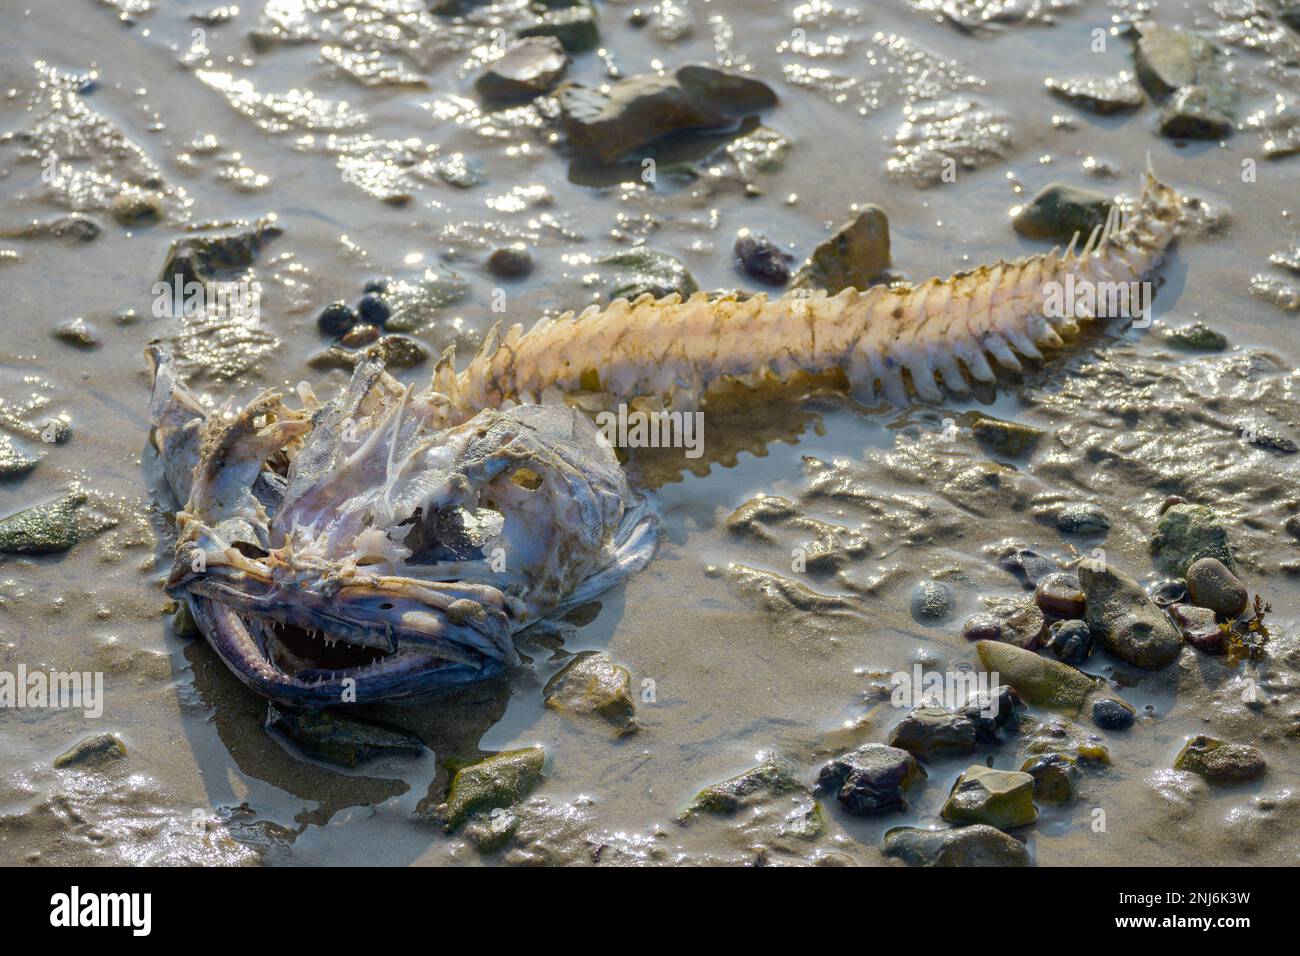 Squelette de poisson sur la plage. Pêche à la ligne / monkfish. Whitstable, Kent, Angleterre, Royaume-Uni. Février Banque D'Images